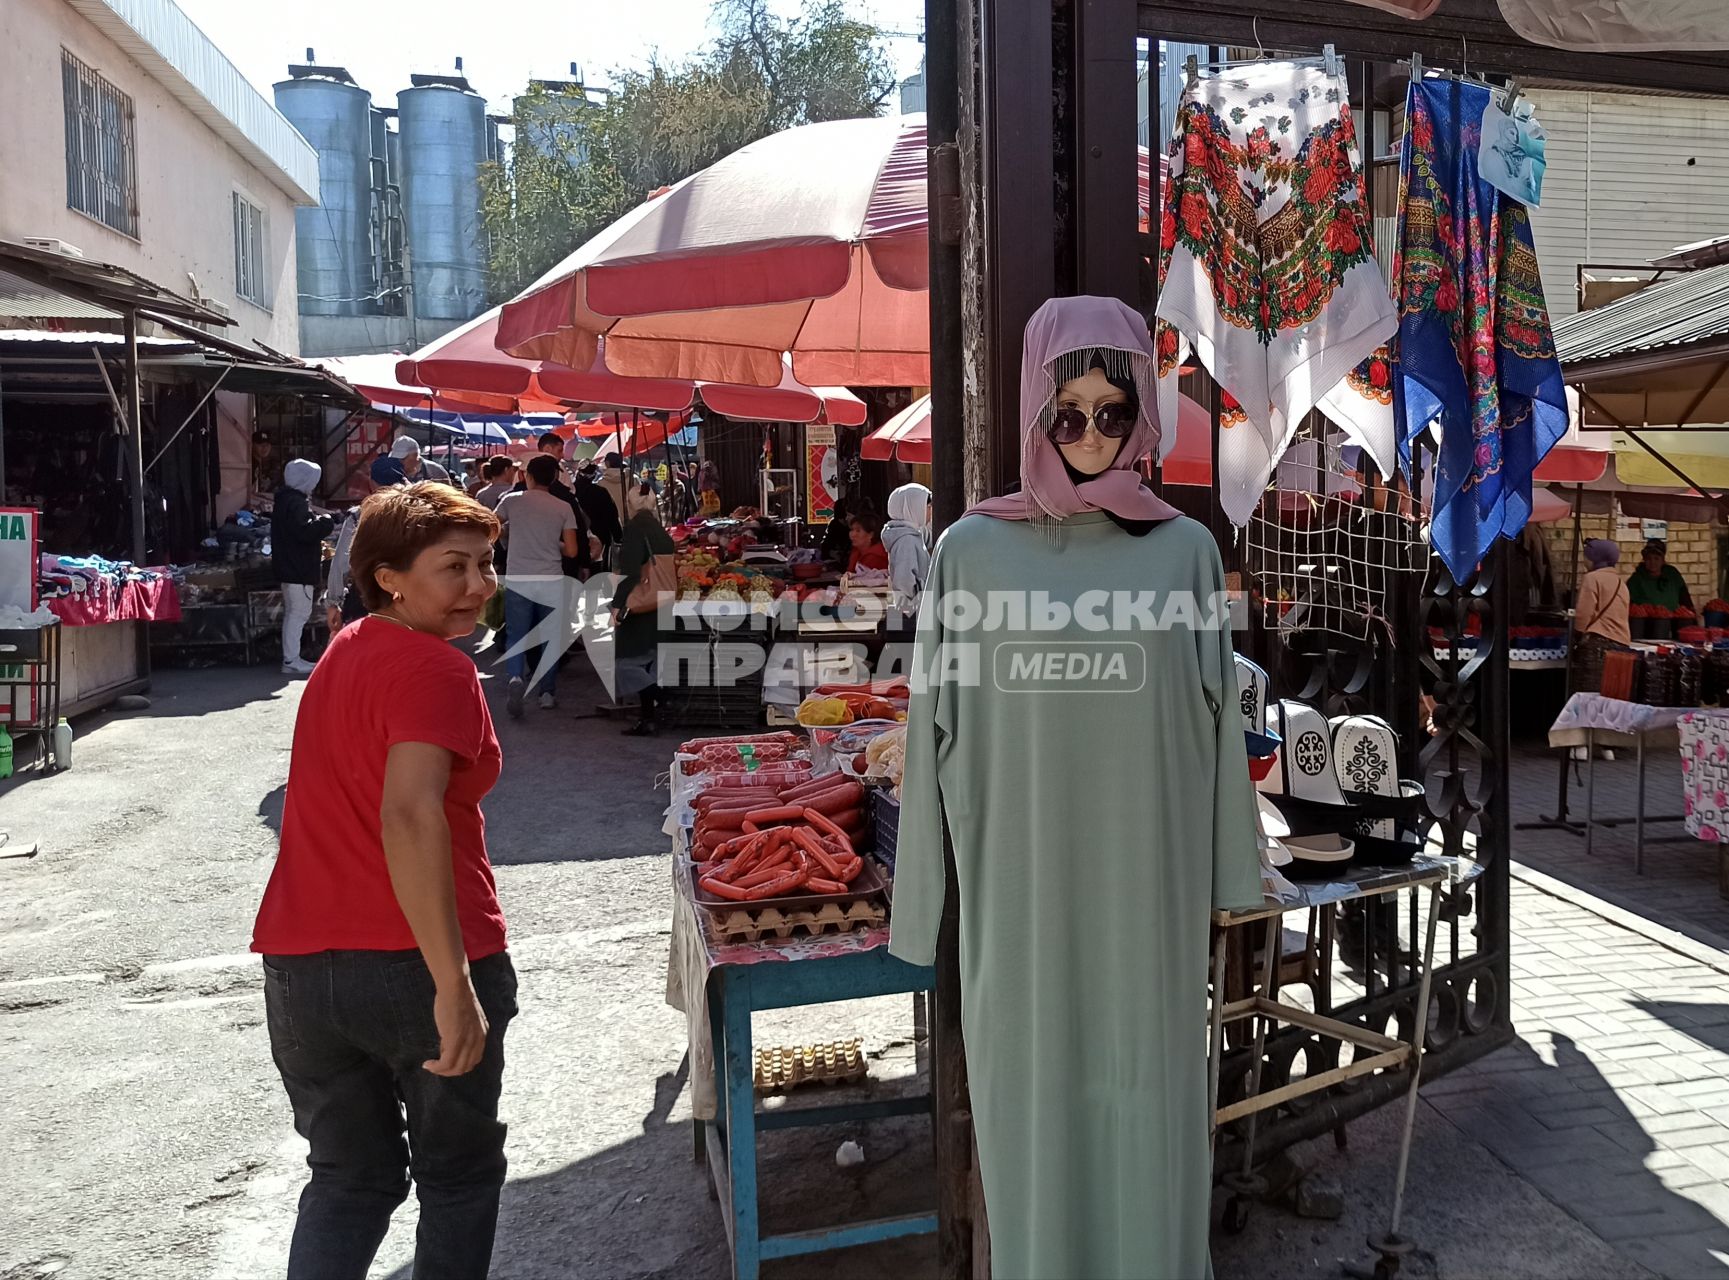 Киргизия. г.Бишкек. Манекен с одеждой для мусульманки на рынке.